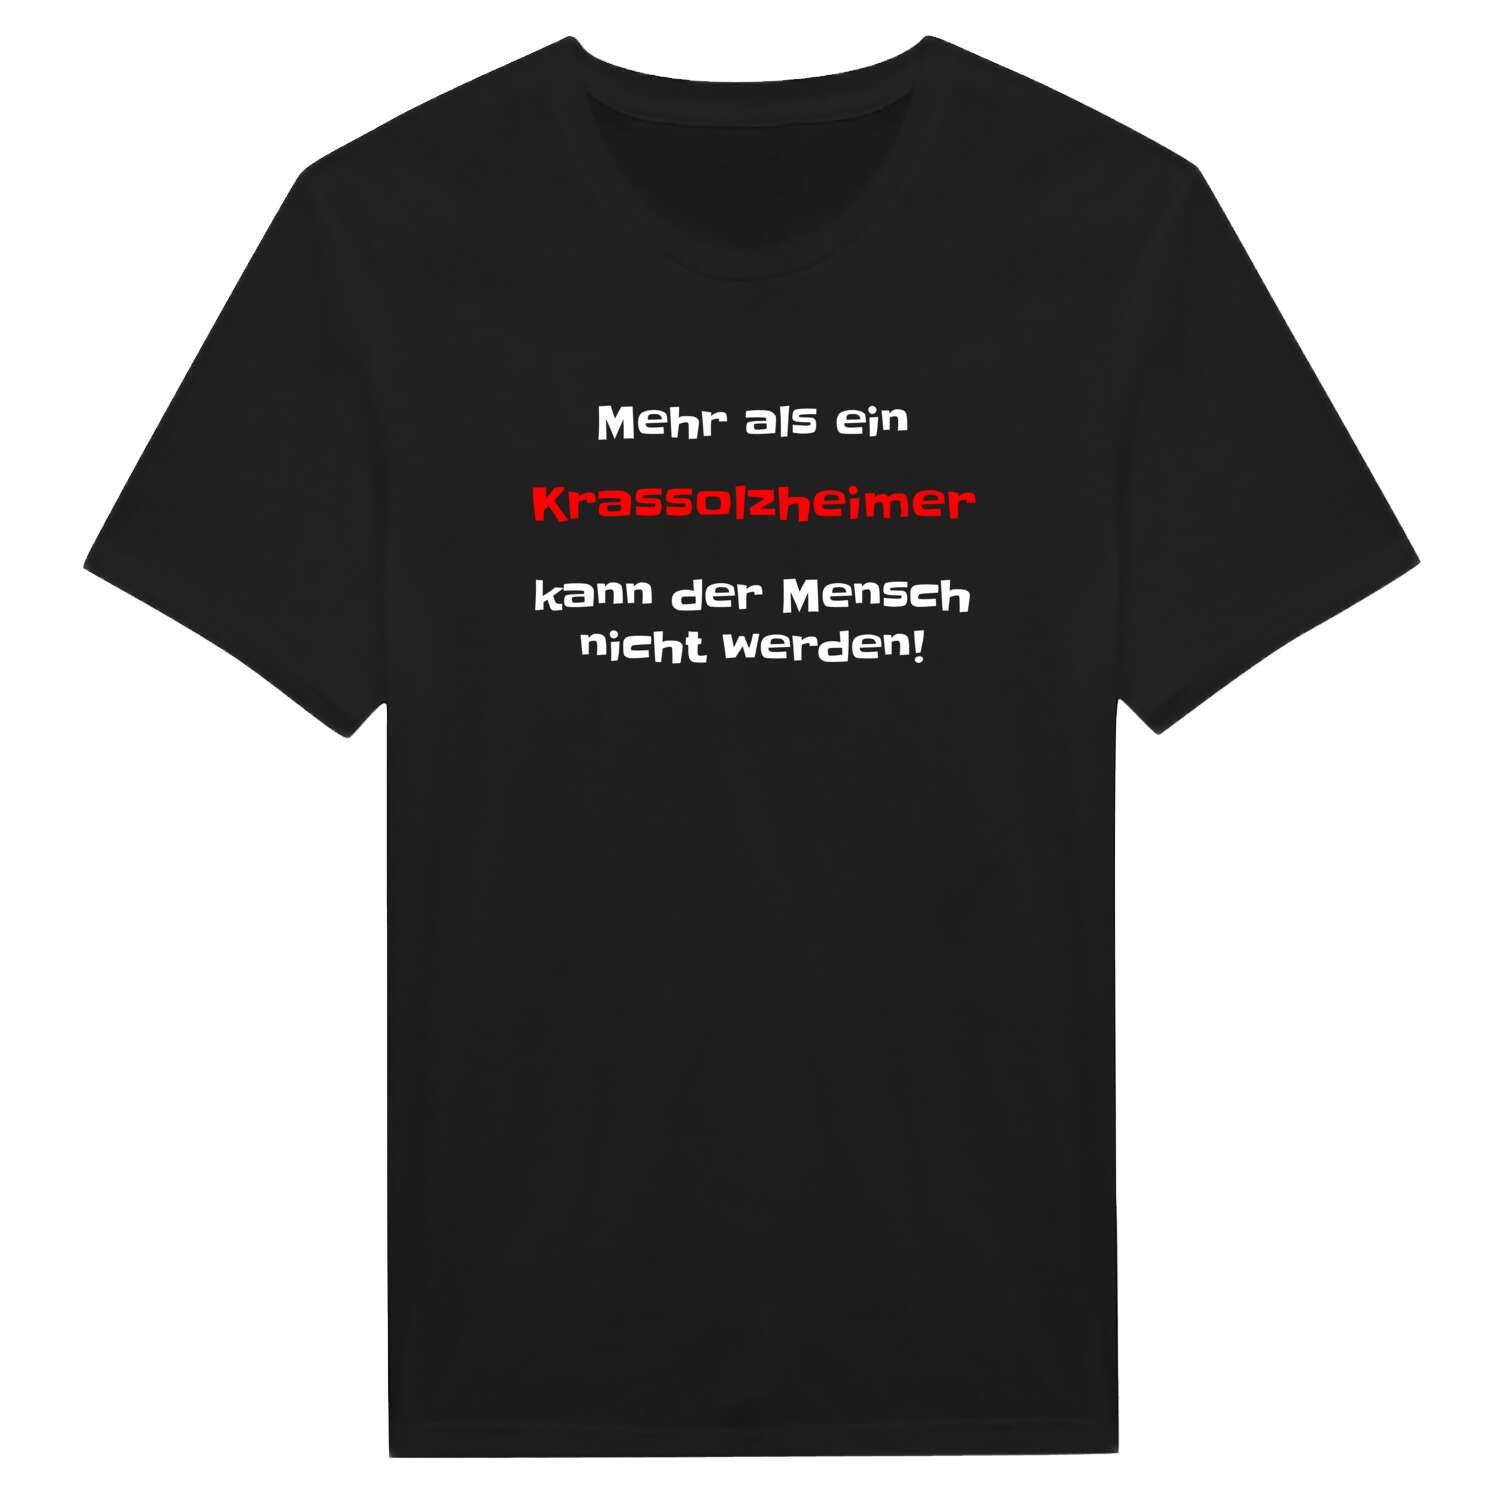 Krassolzheim T-Shirt »Mehr als ein«